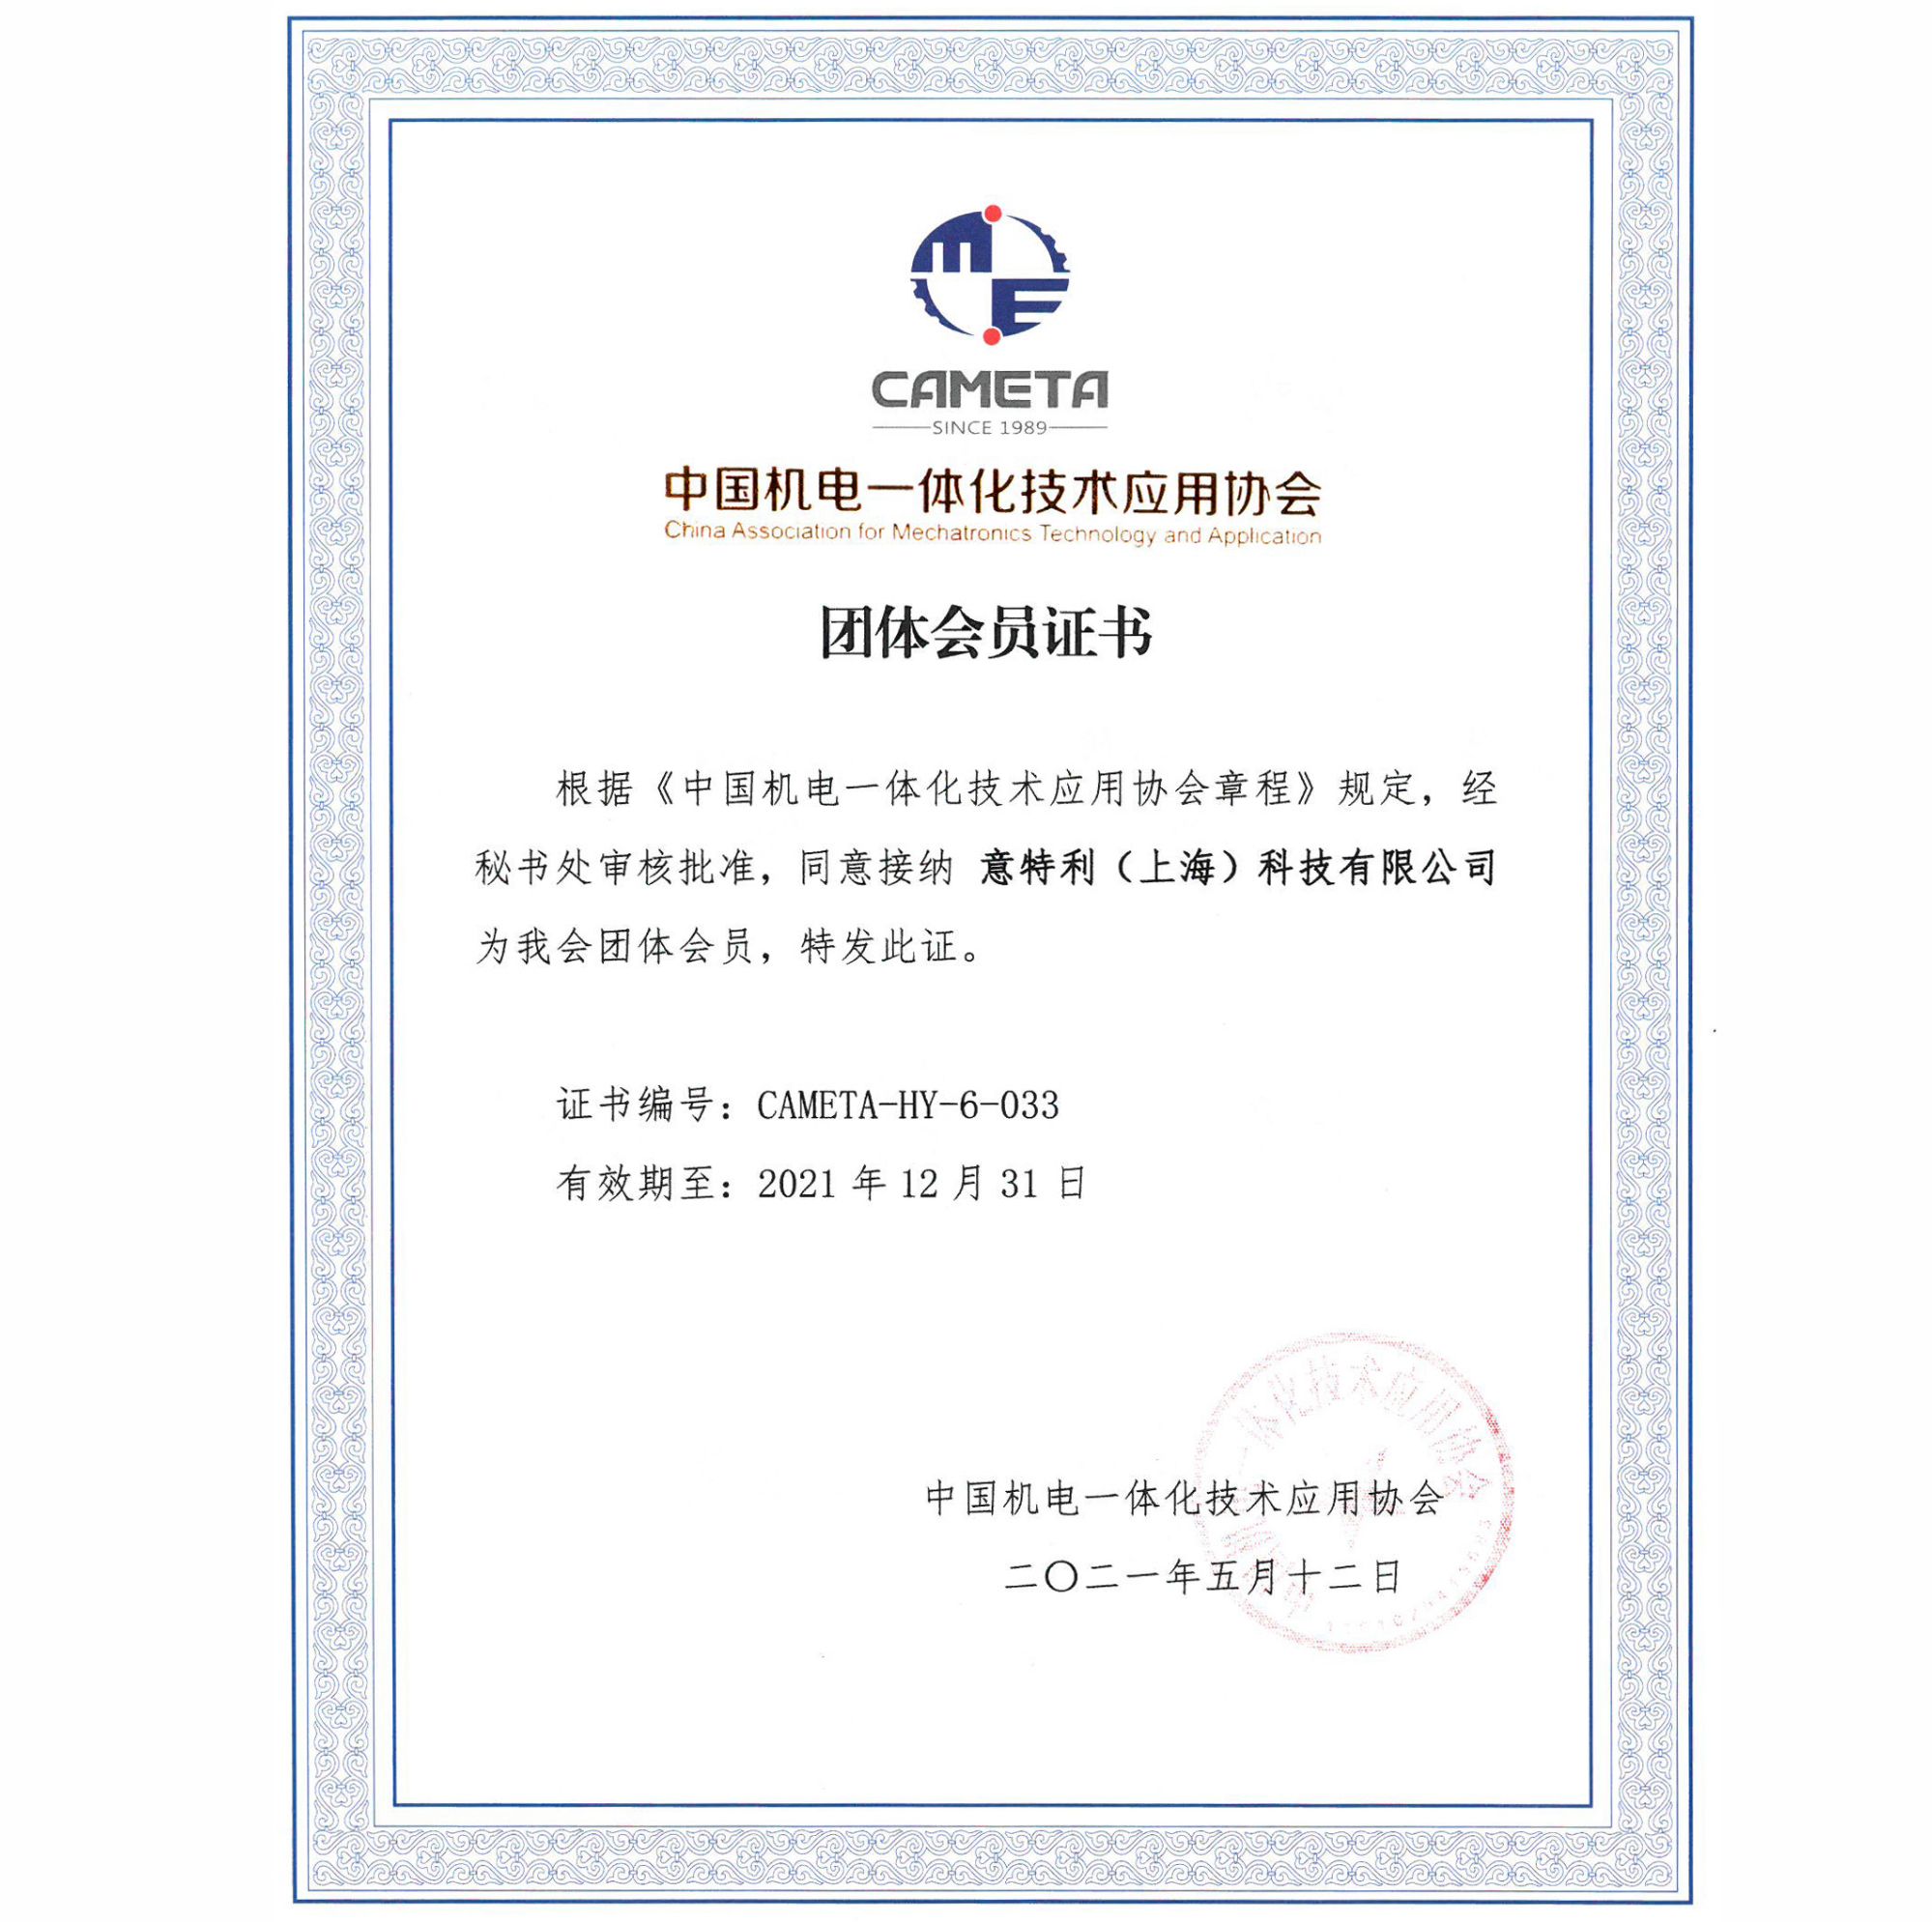 中国机电一体化技术应用协会团体会员证书